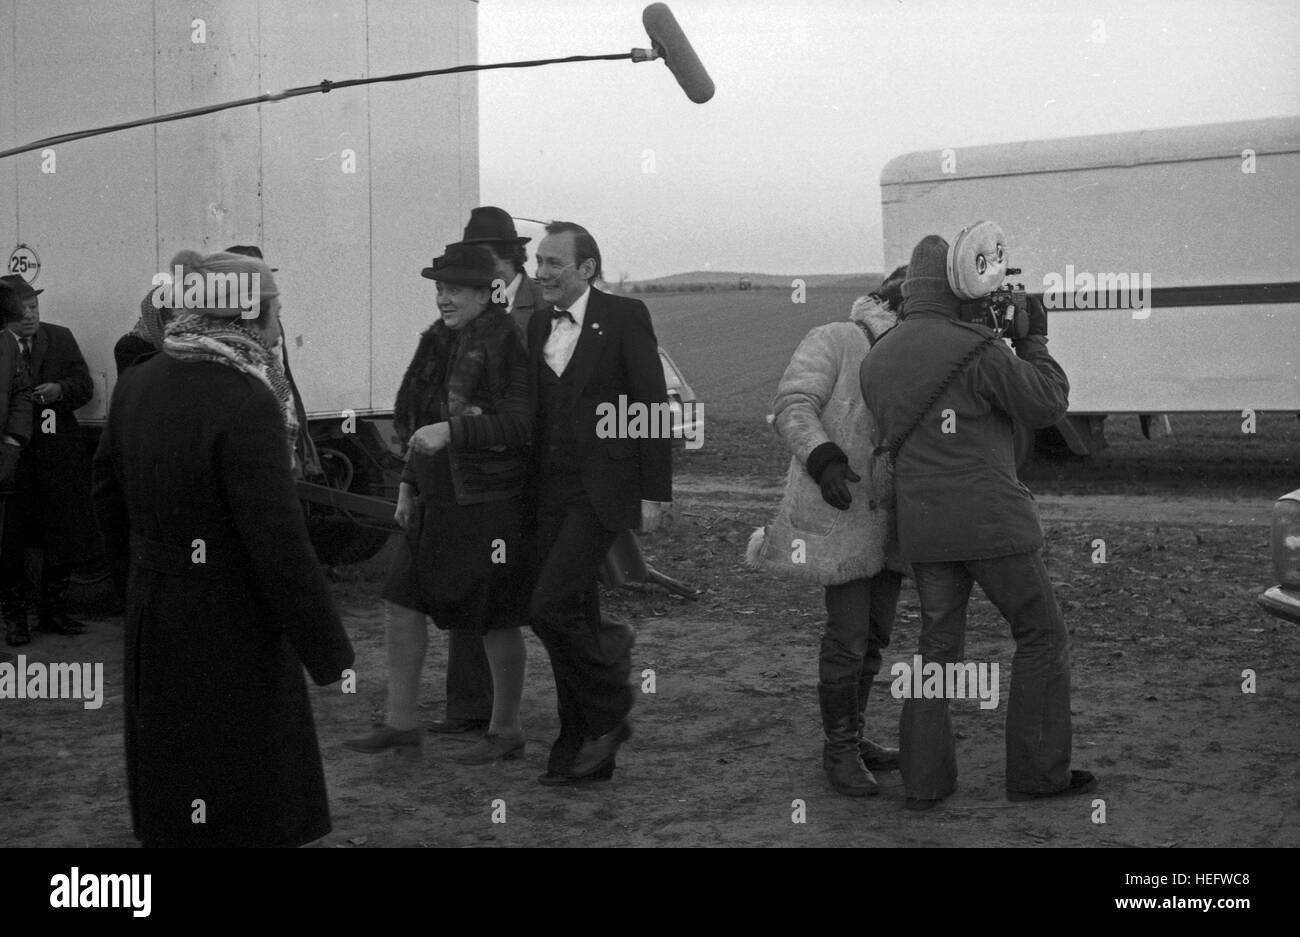 Neues aus Uhlenbusch, Kinderserie, Deutschland 1978, Regie: Gerard Samaan, Szenenfoto aus der Episode 'Das Fest fällt aus' Stock Photo